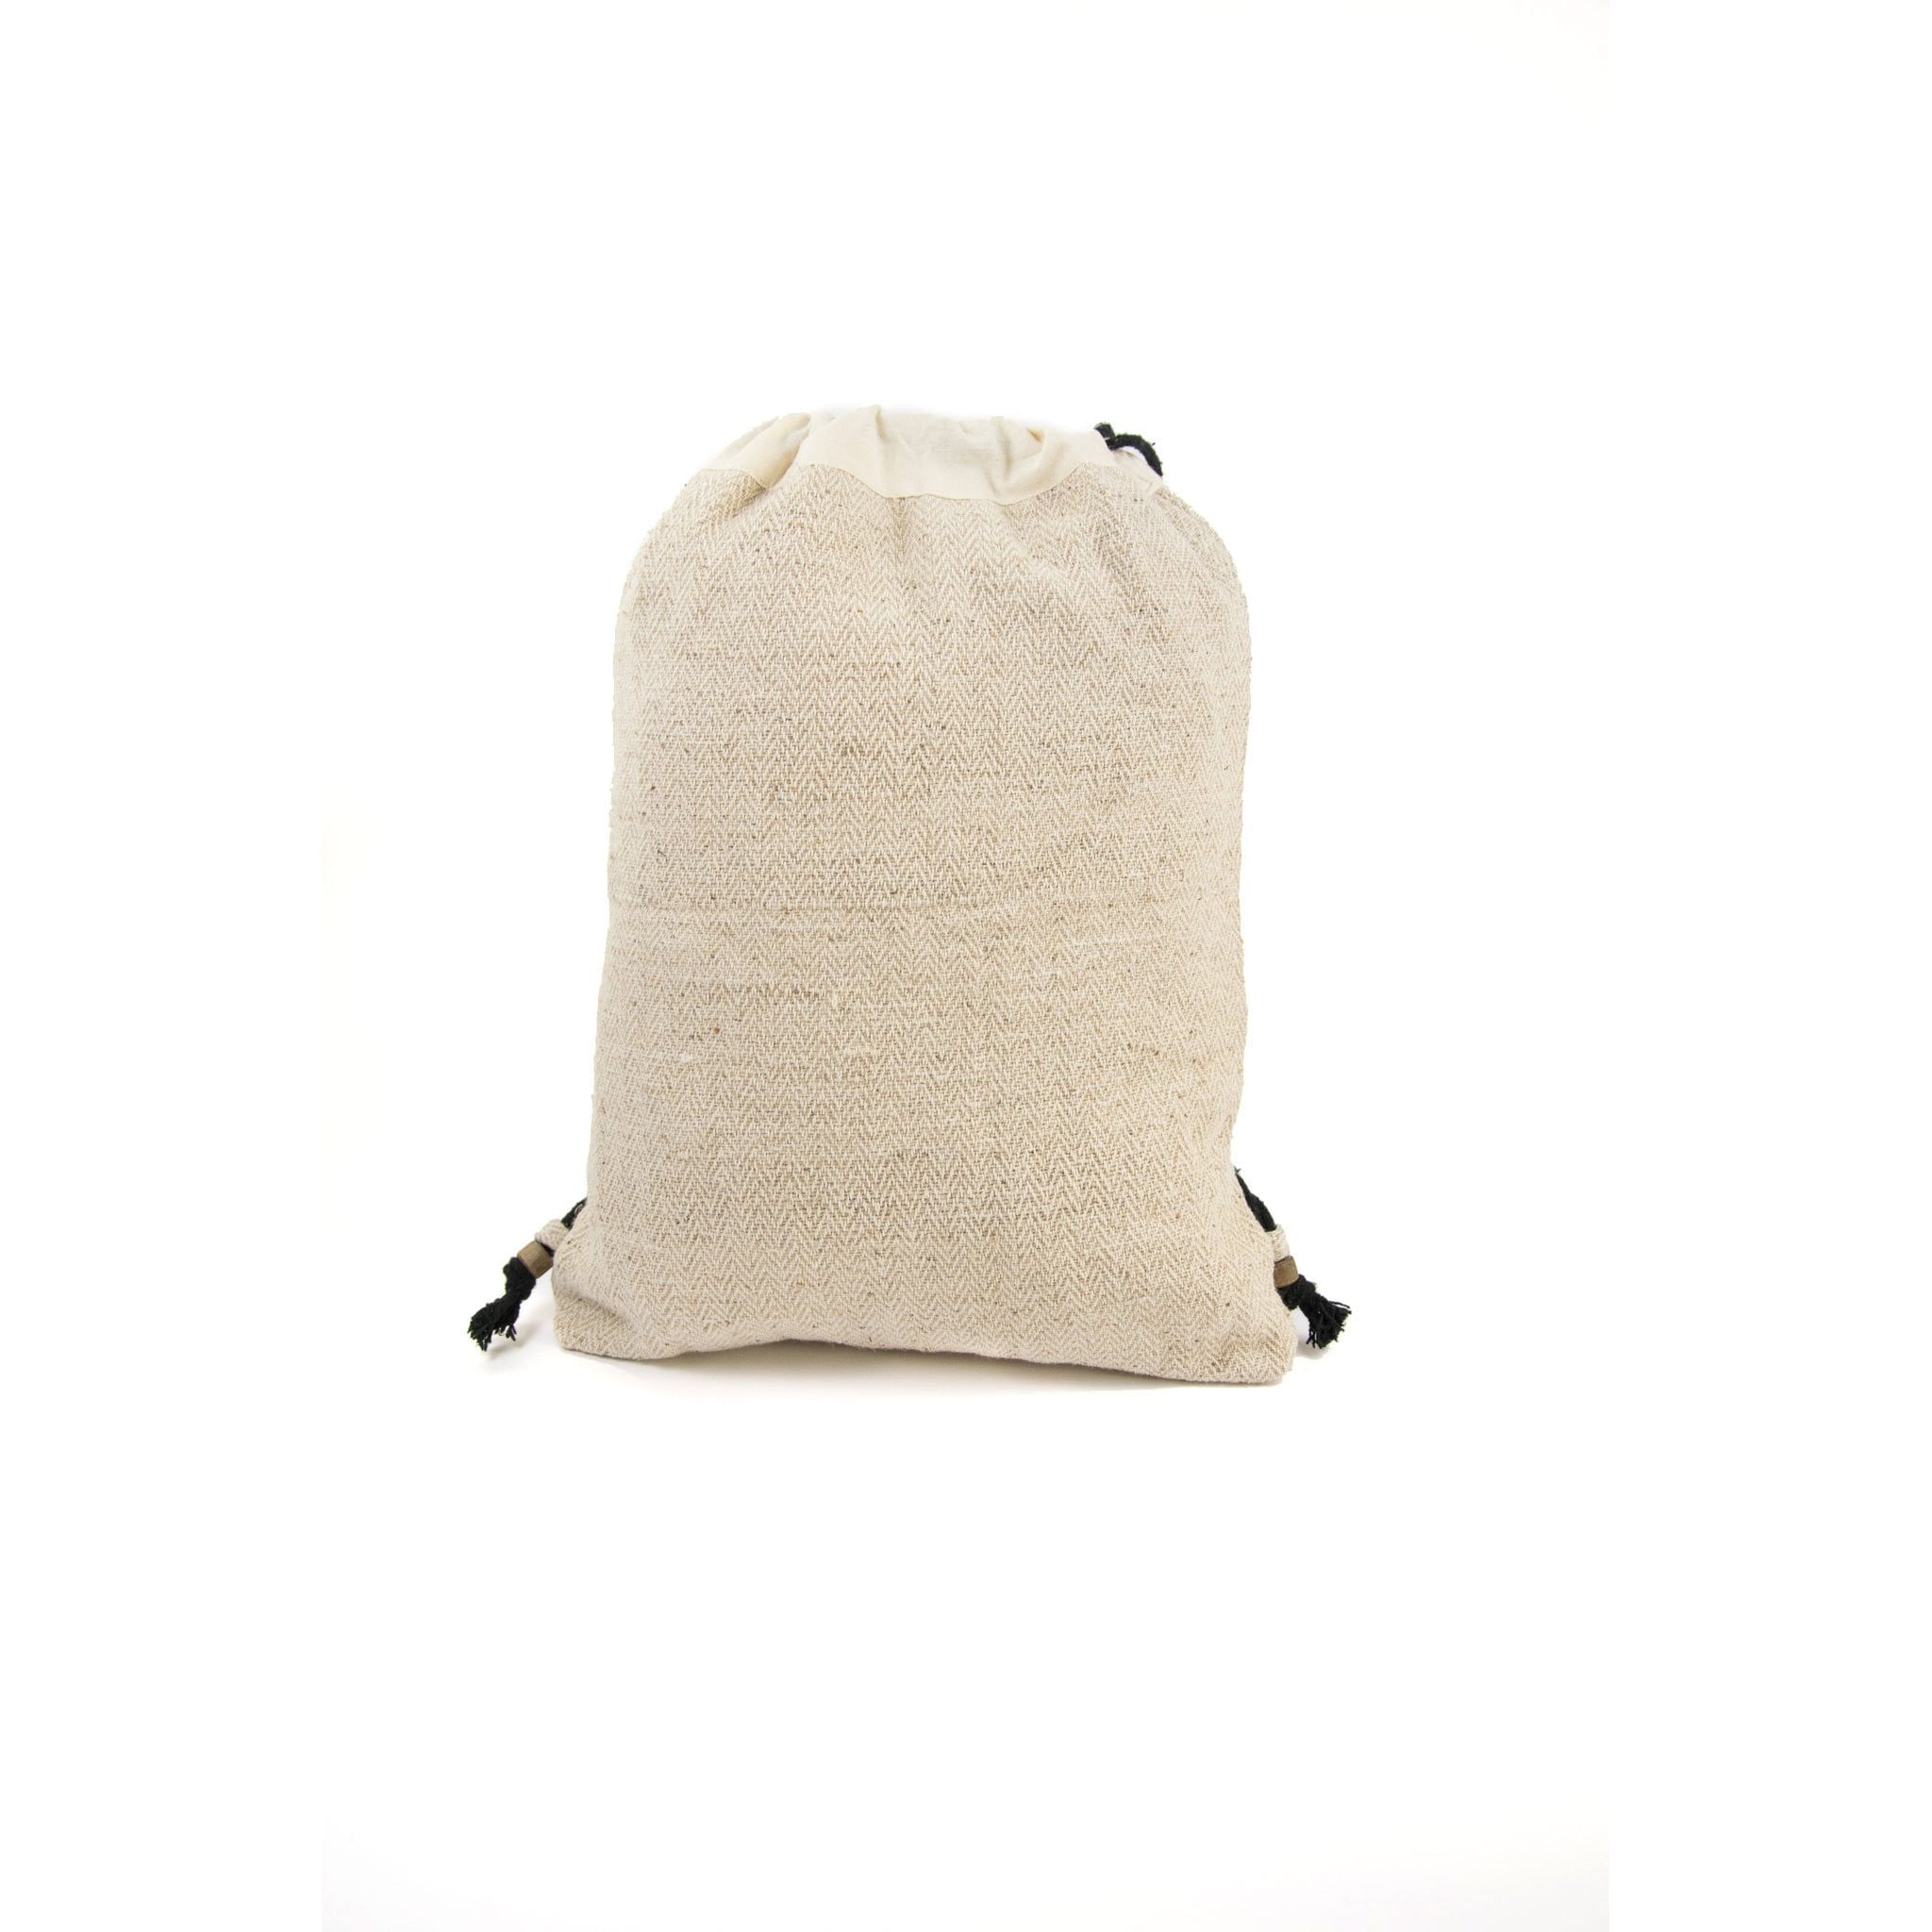 Hemp drawstring bag, natural - Hempalaya